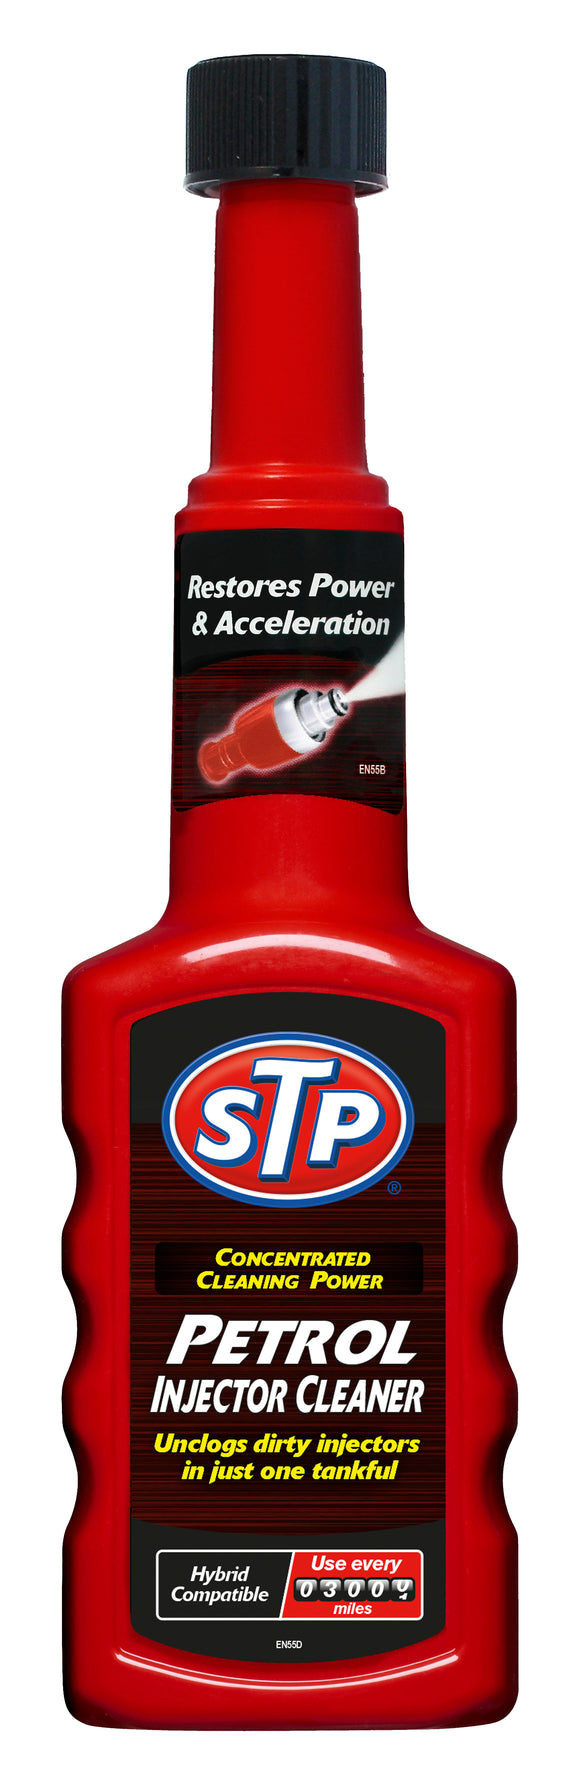 STP 200ml Petrol Injector Cleaner - ST53200EN